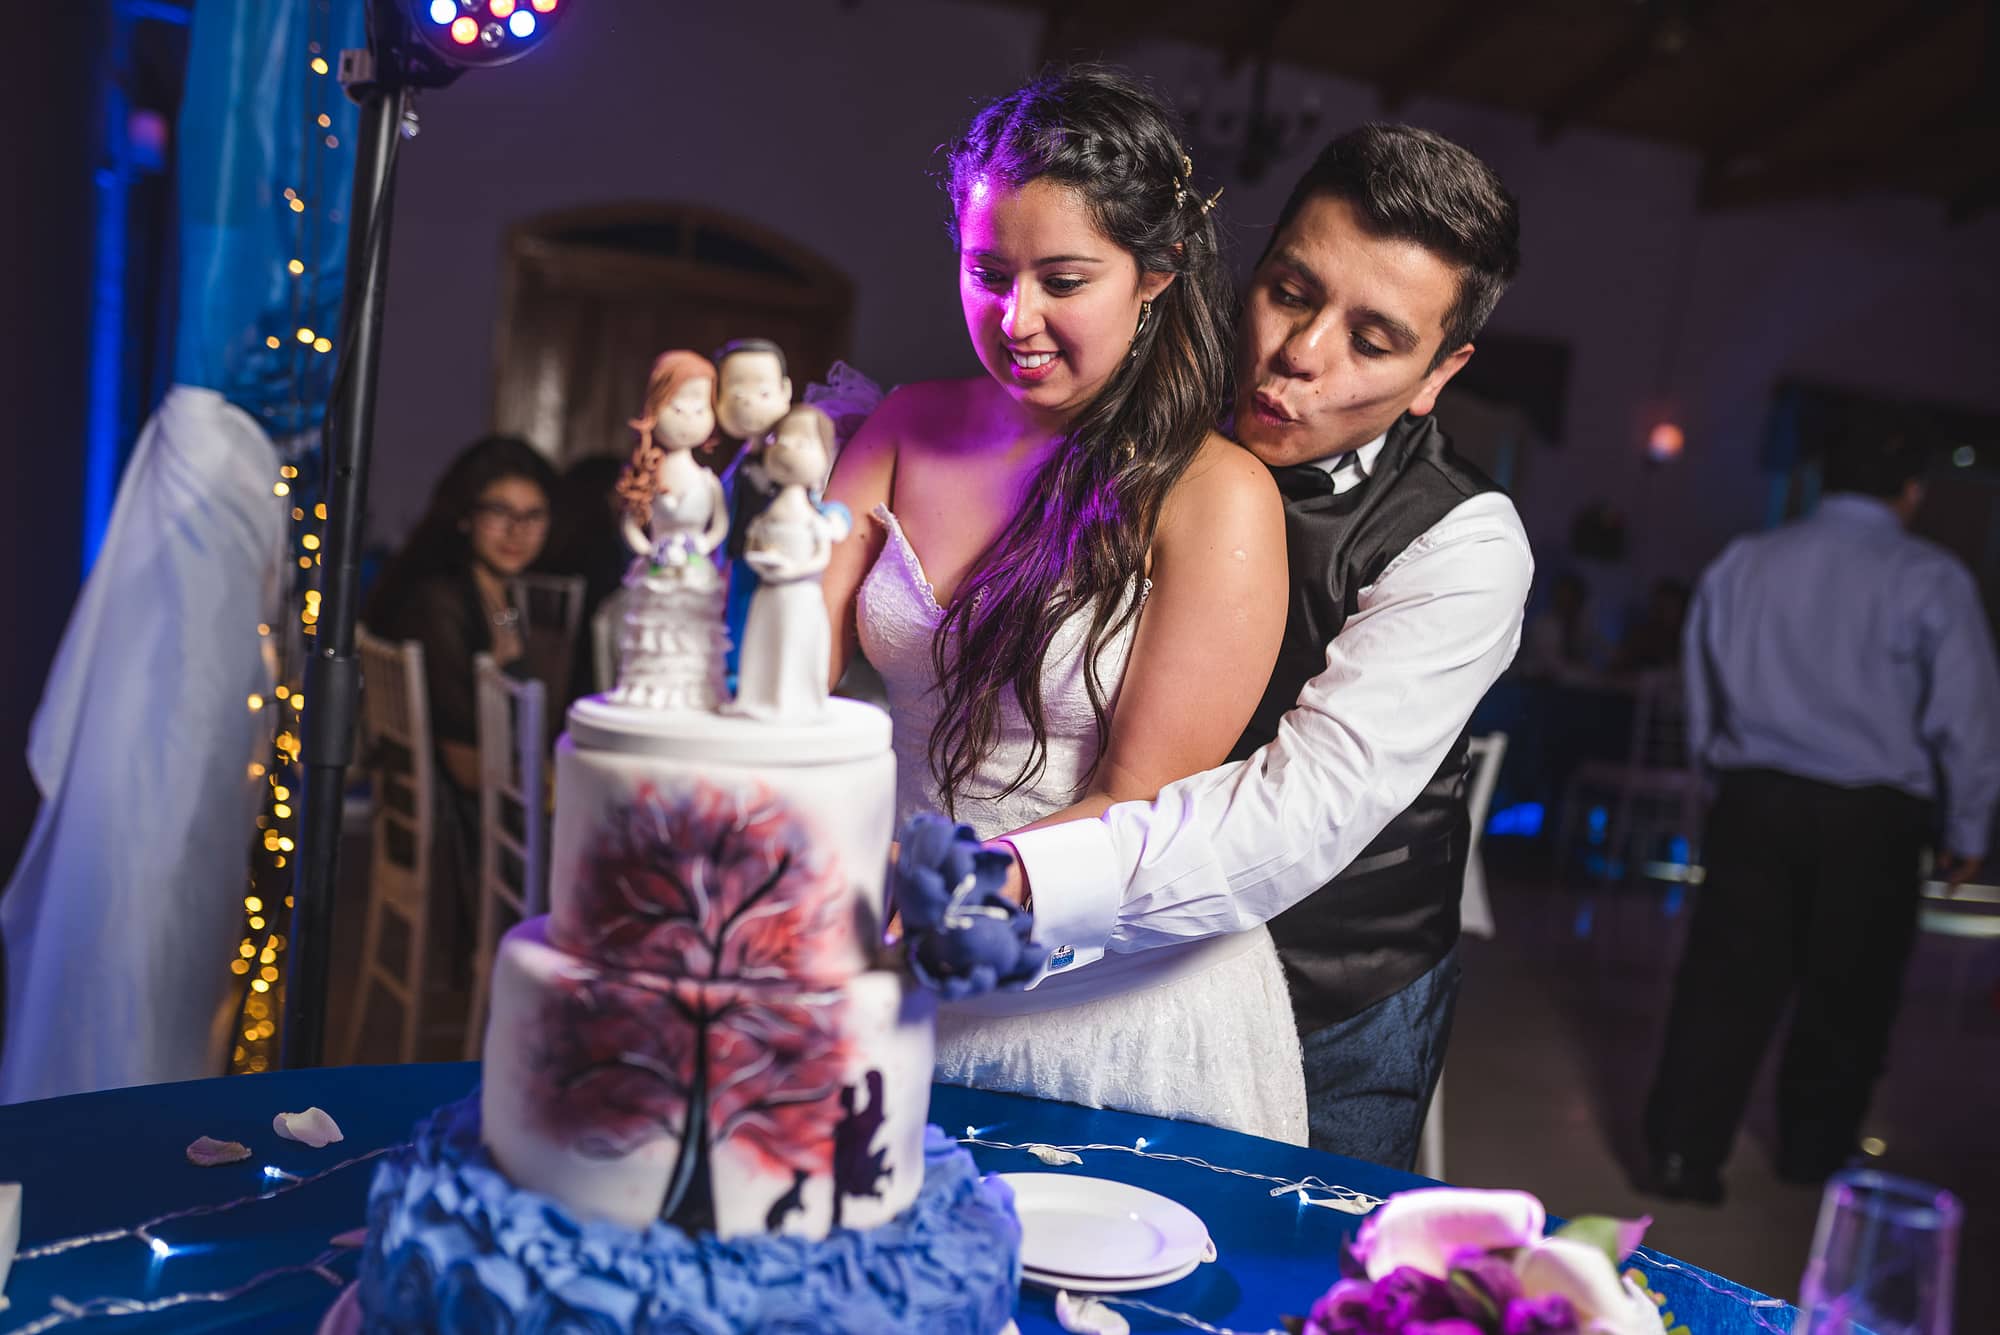 Matrimonio-centro de eventos-oliveto-santiago-fotógrafo de matrimonios-fiesta-torta novios